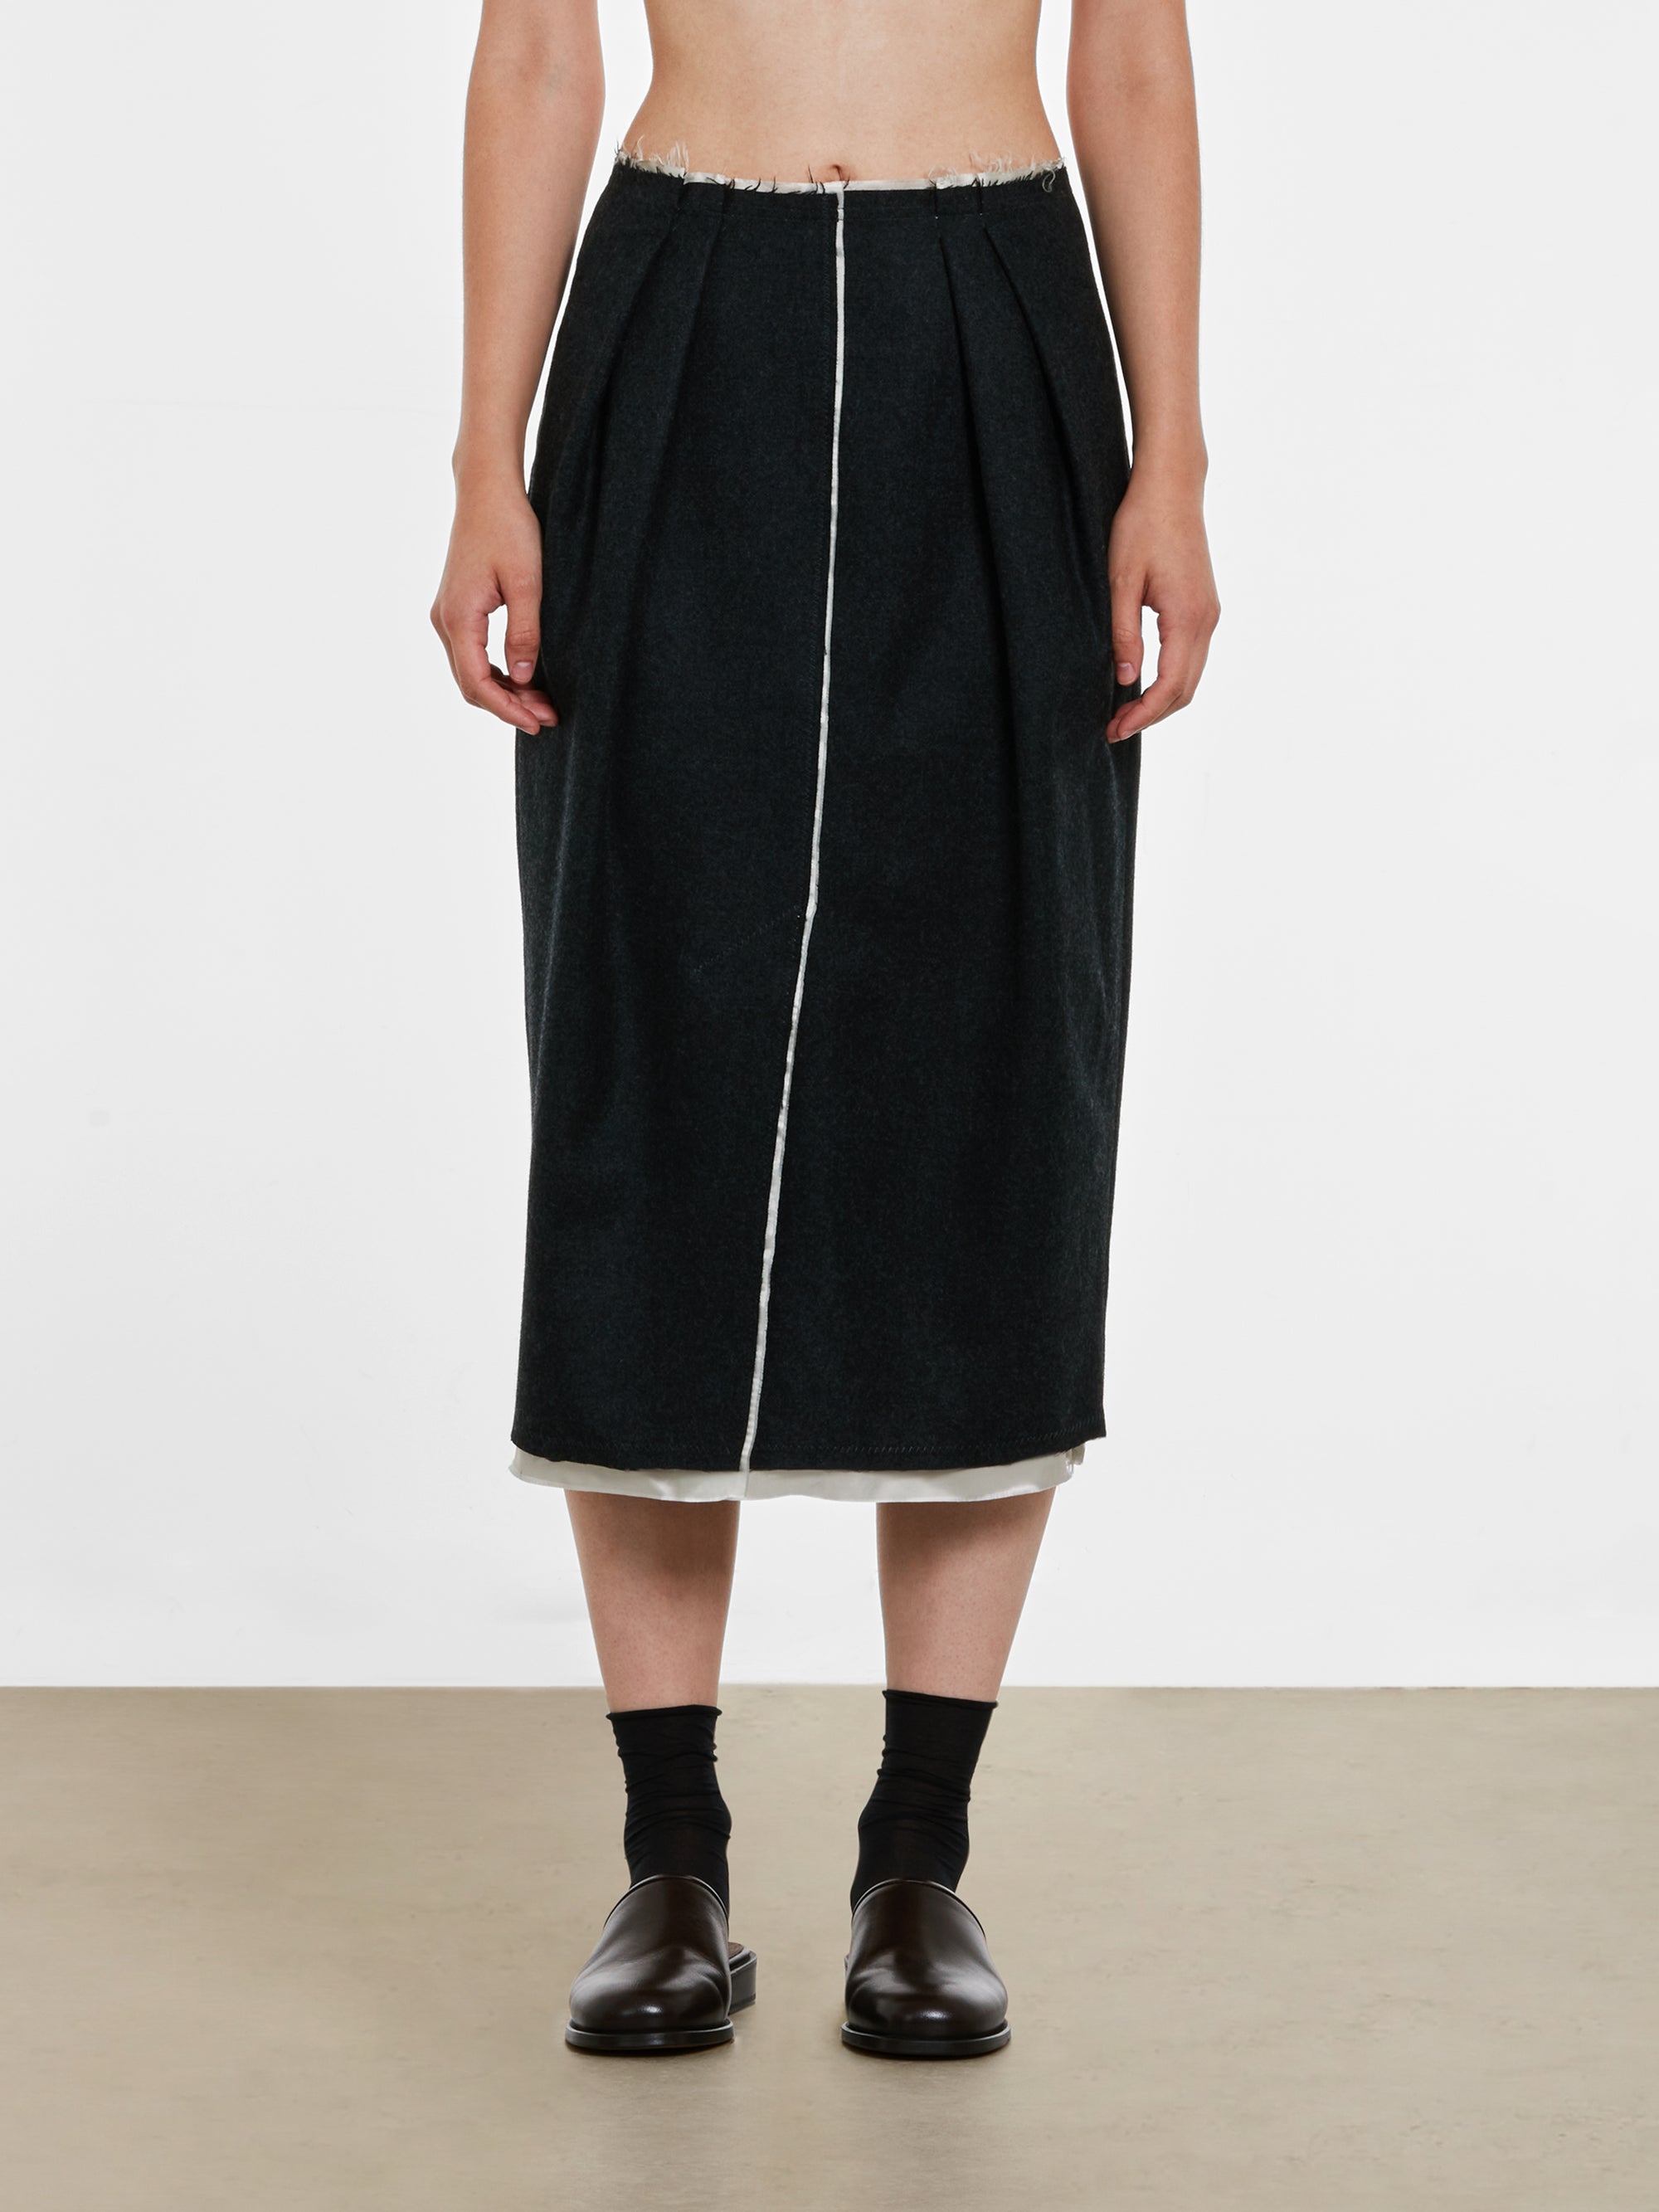 Dries Van Noten - Women’s Front Slit Skirt - (Anthracite) view 1